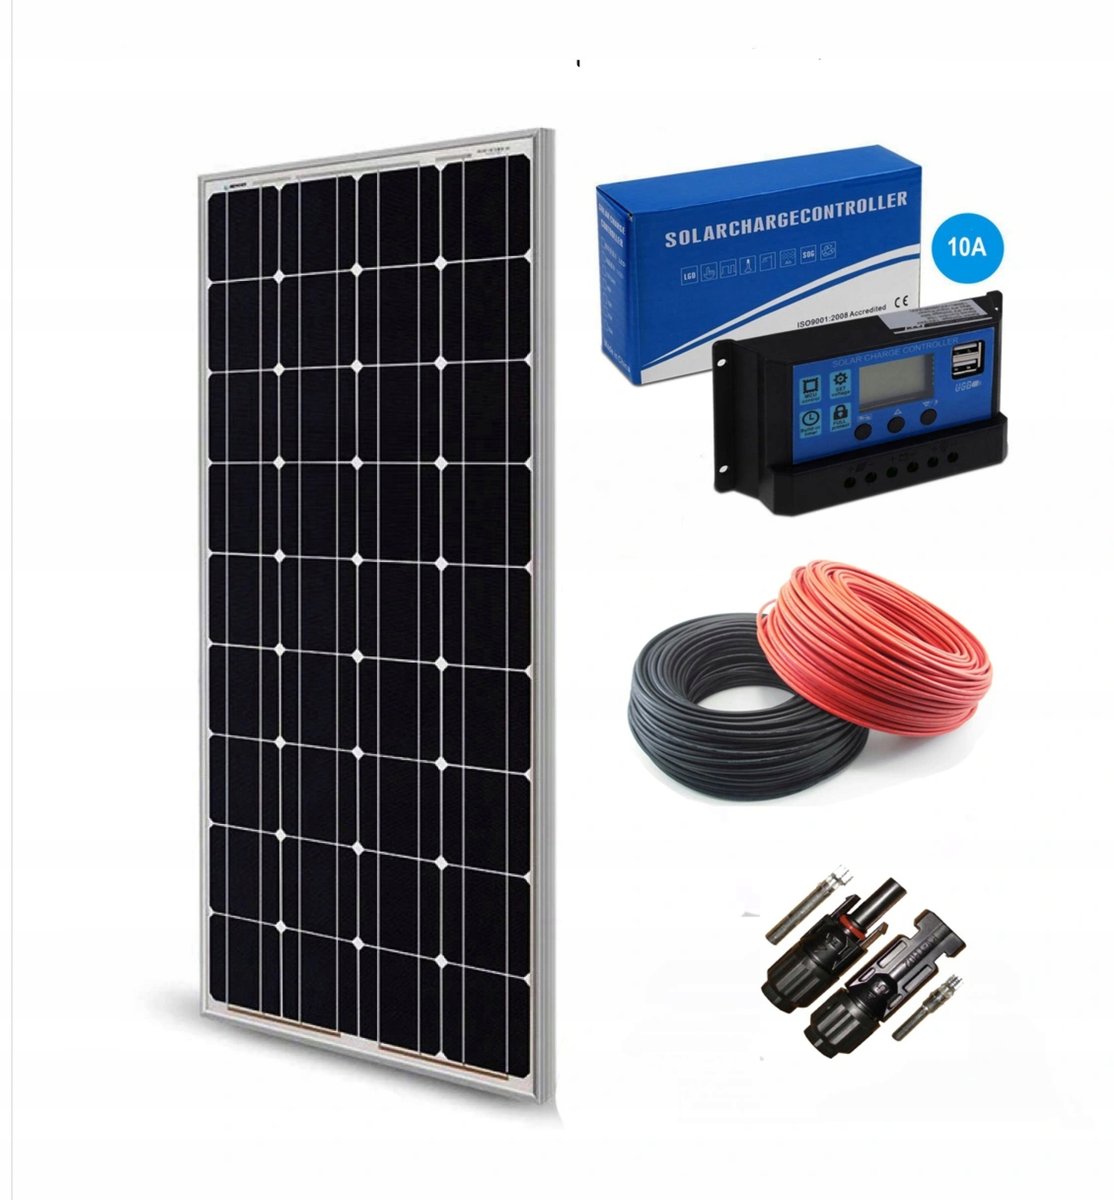 Zdjęcia - Panel słoneczny Panel Solarny 100W + Regulator 10A – Zestaw